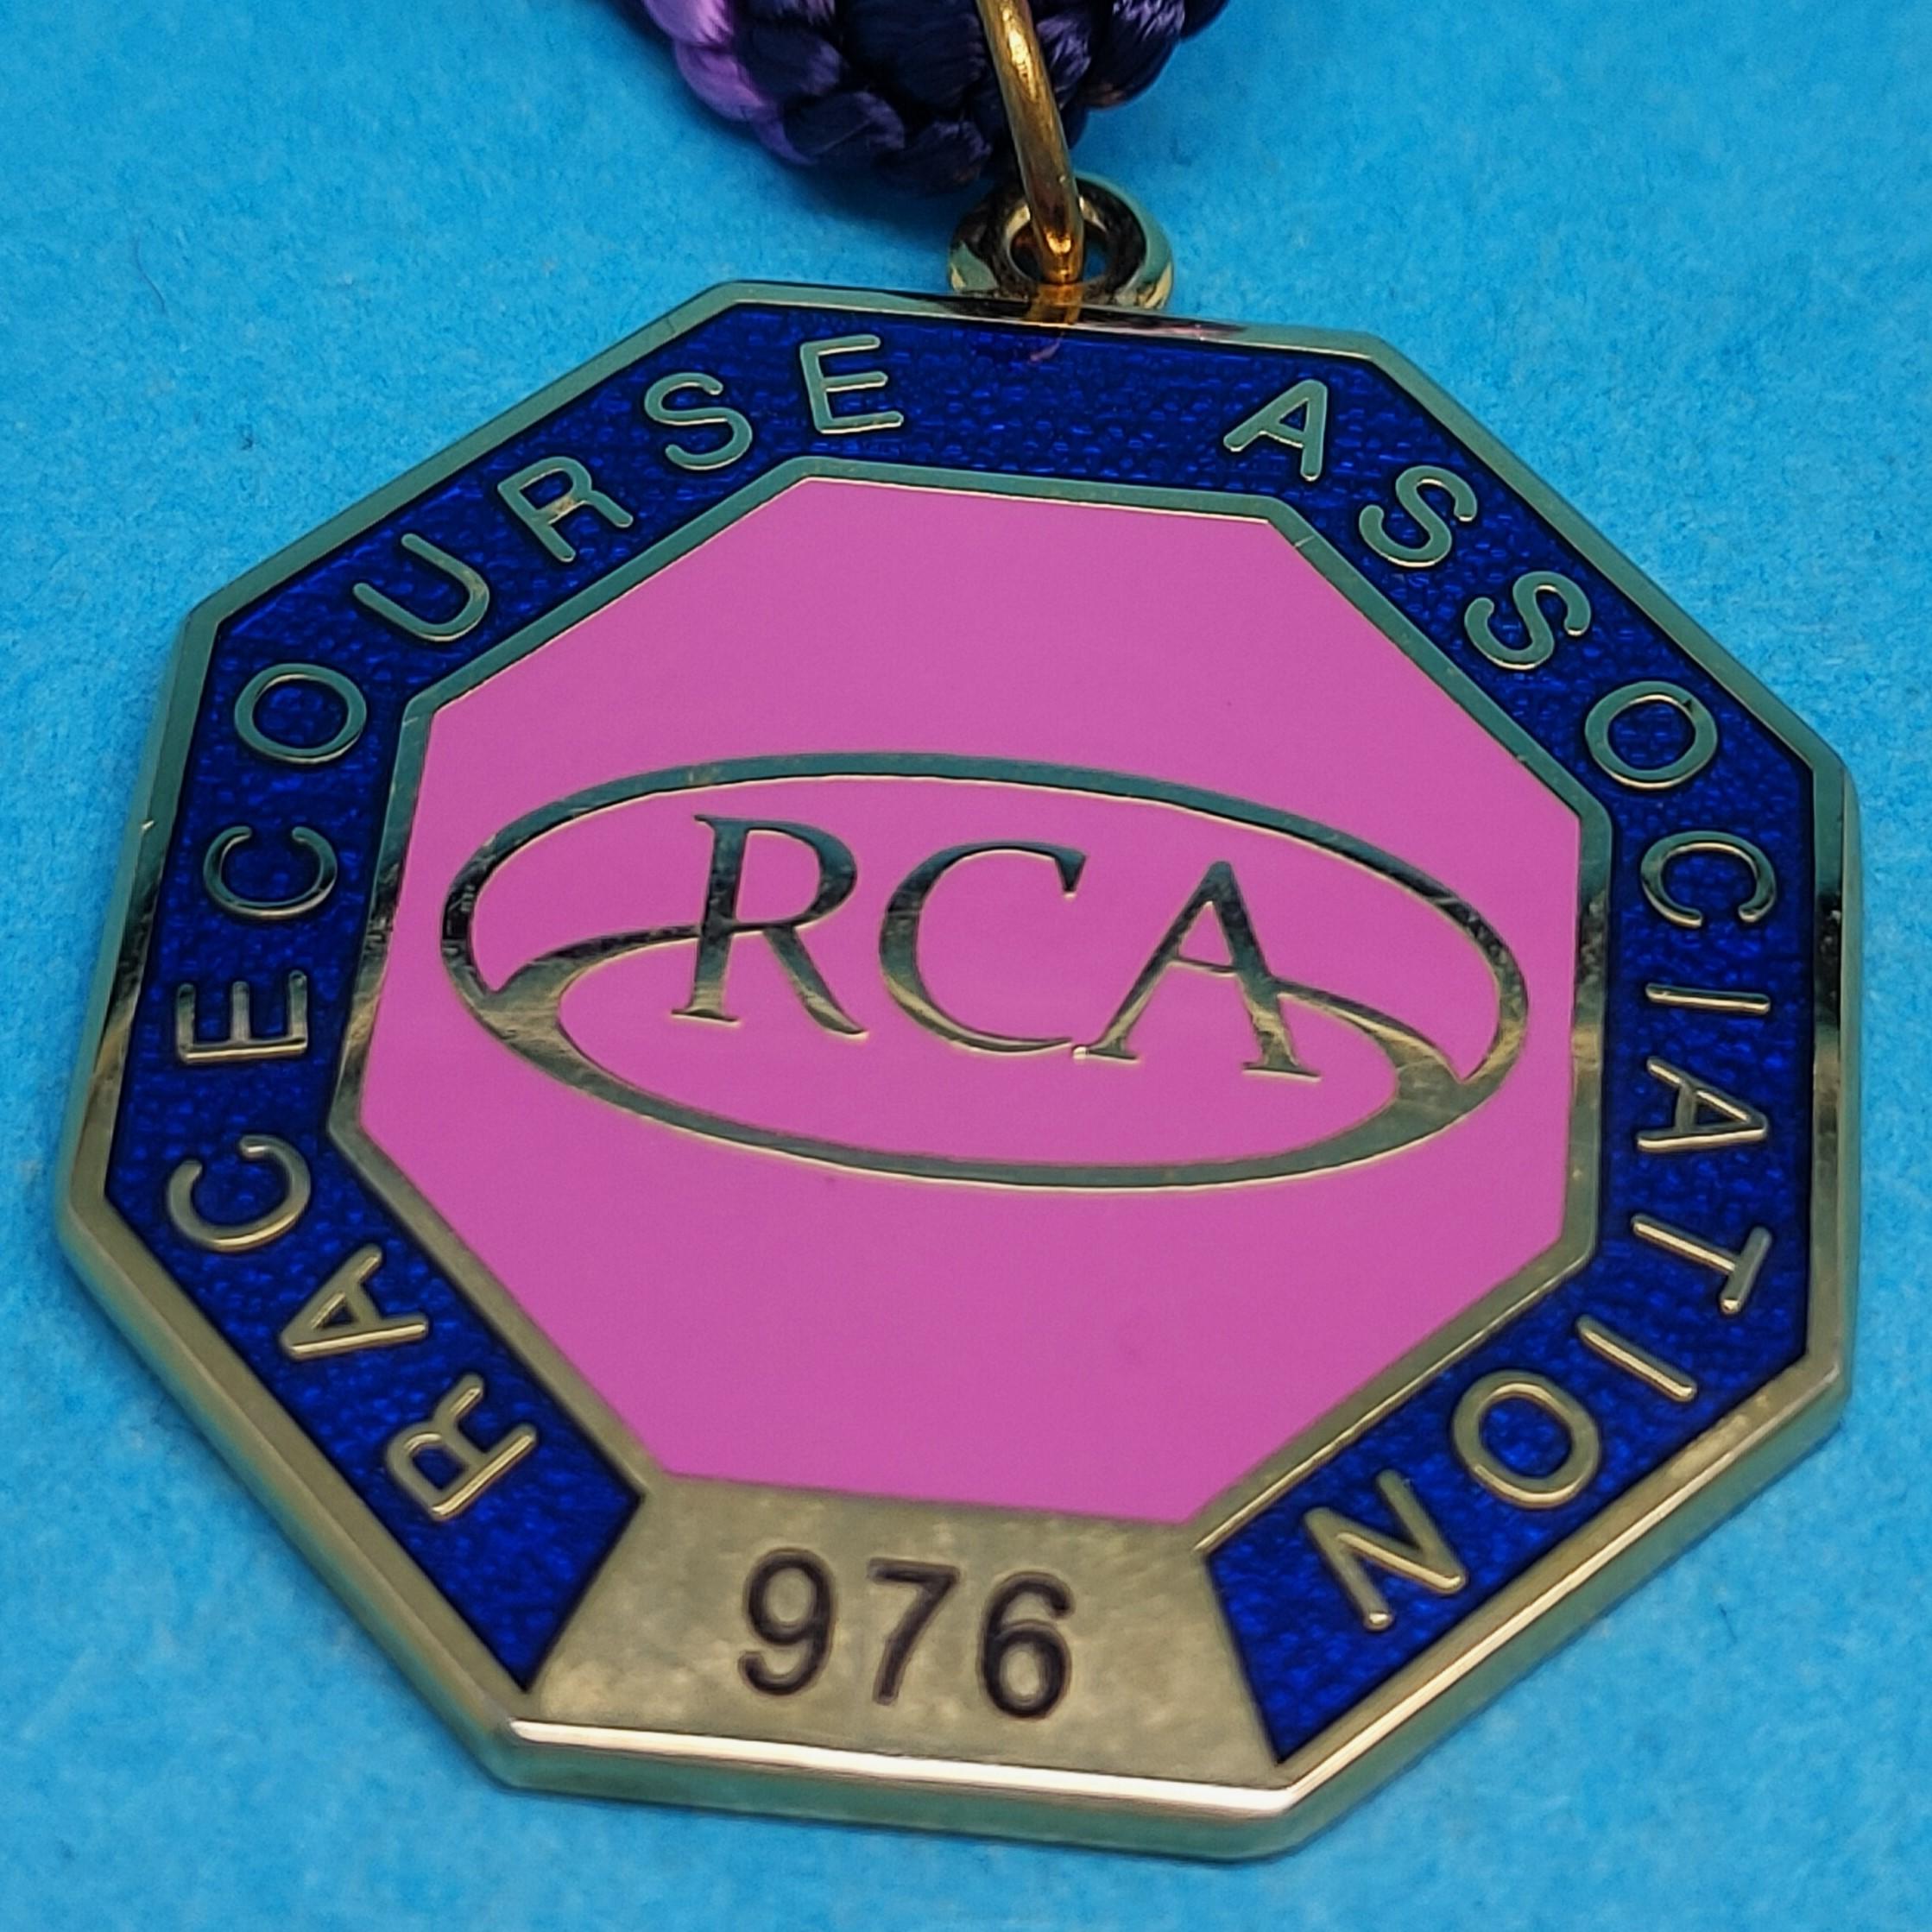 Racecourse Association 2012